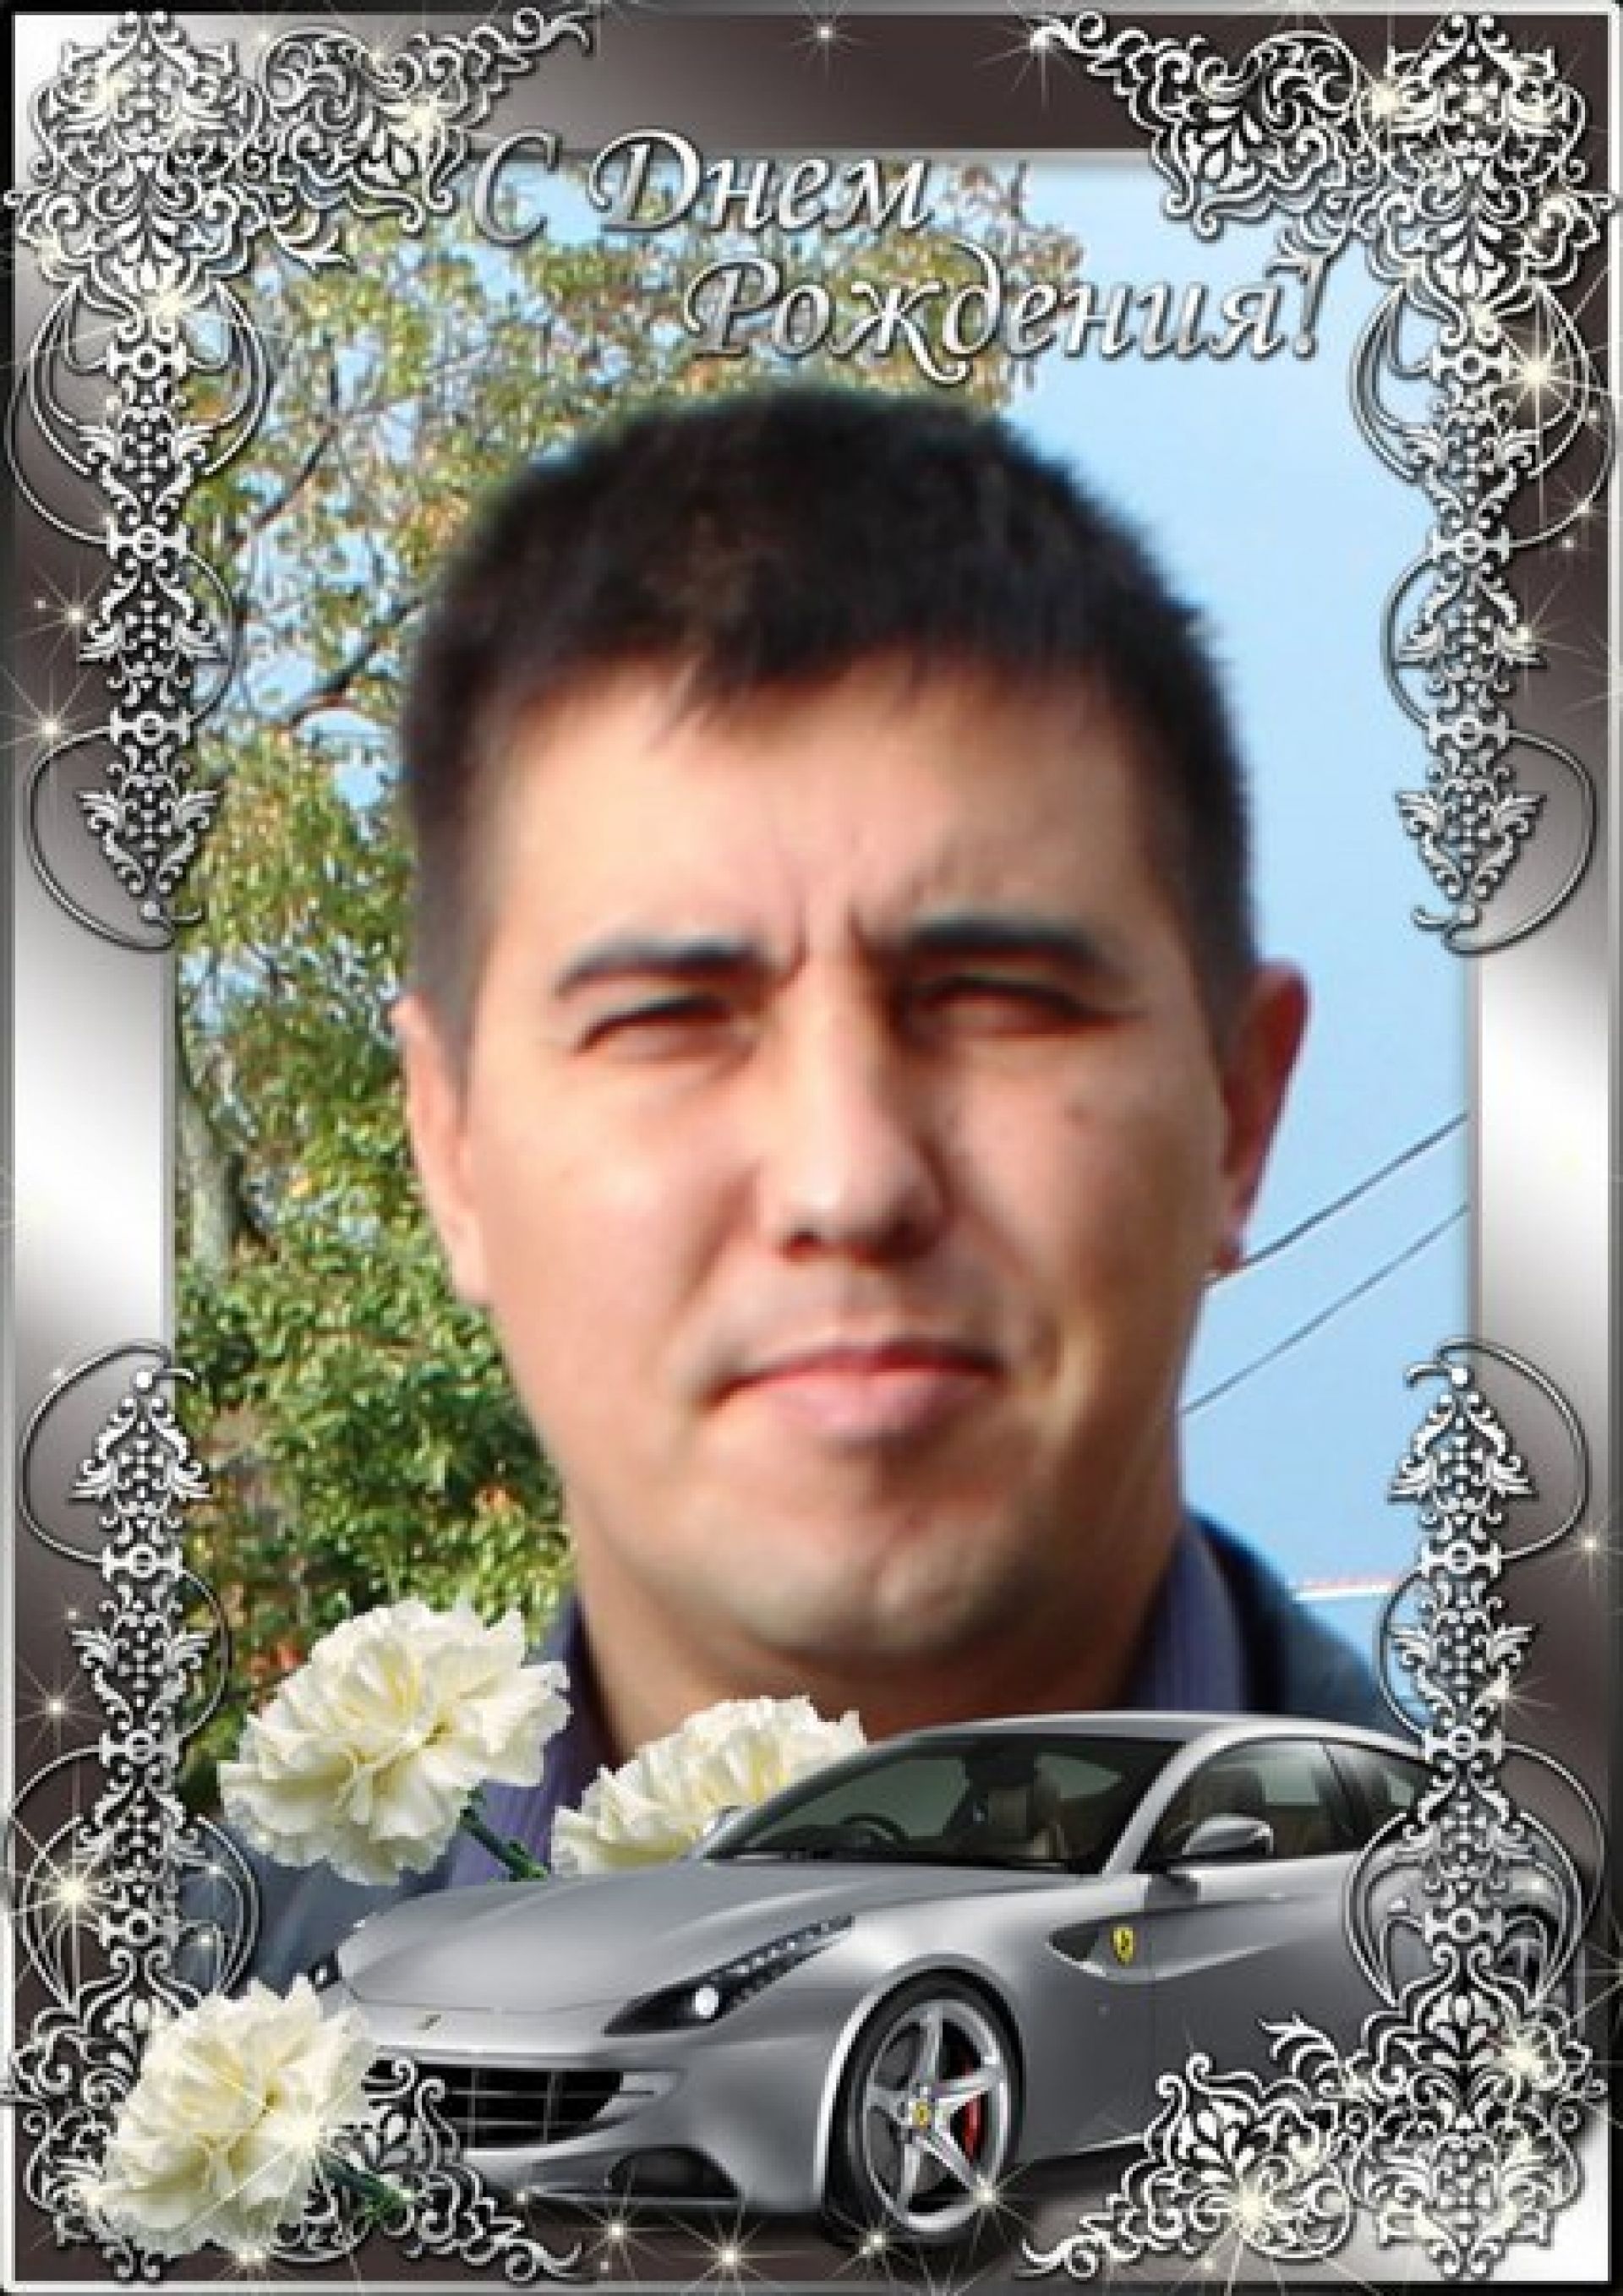 Поздравляем брата Алексея Карсалова с днем рождения